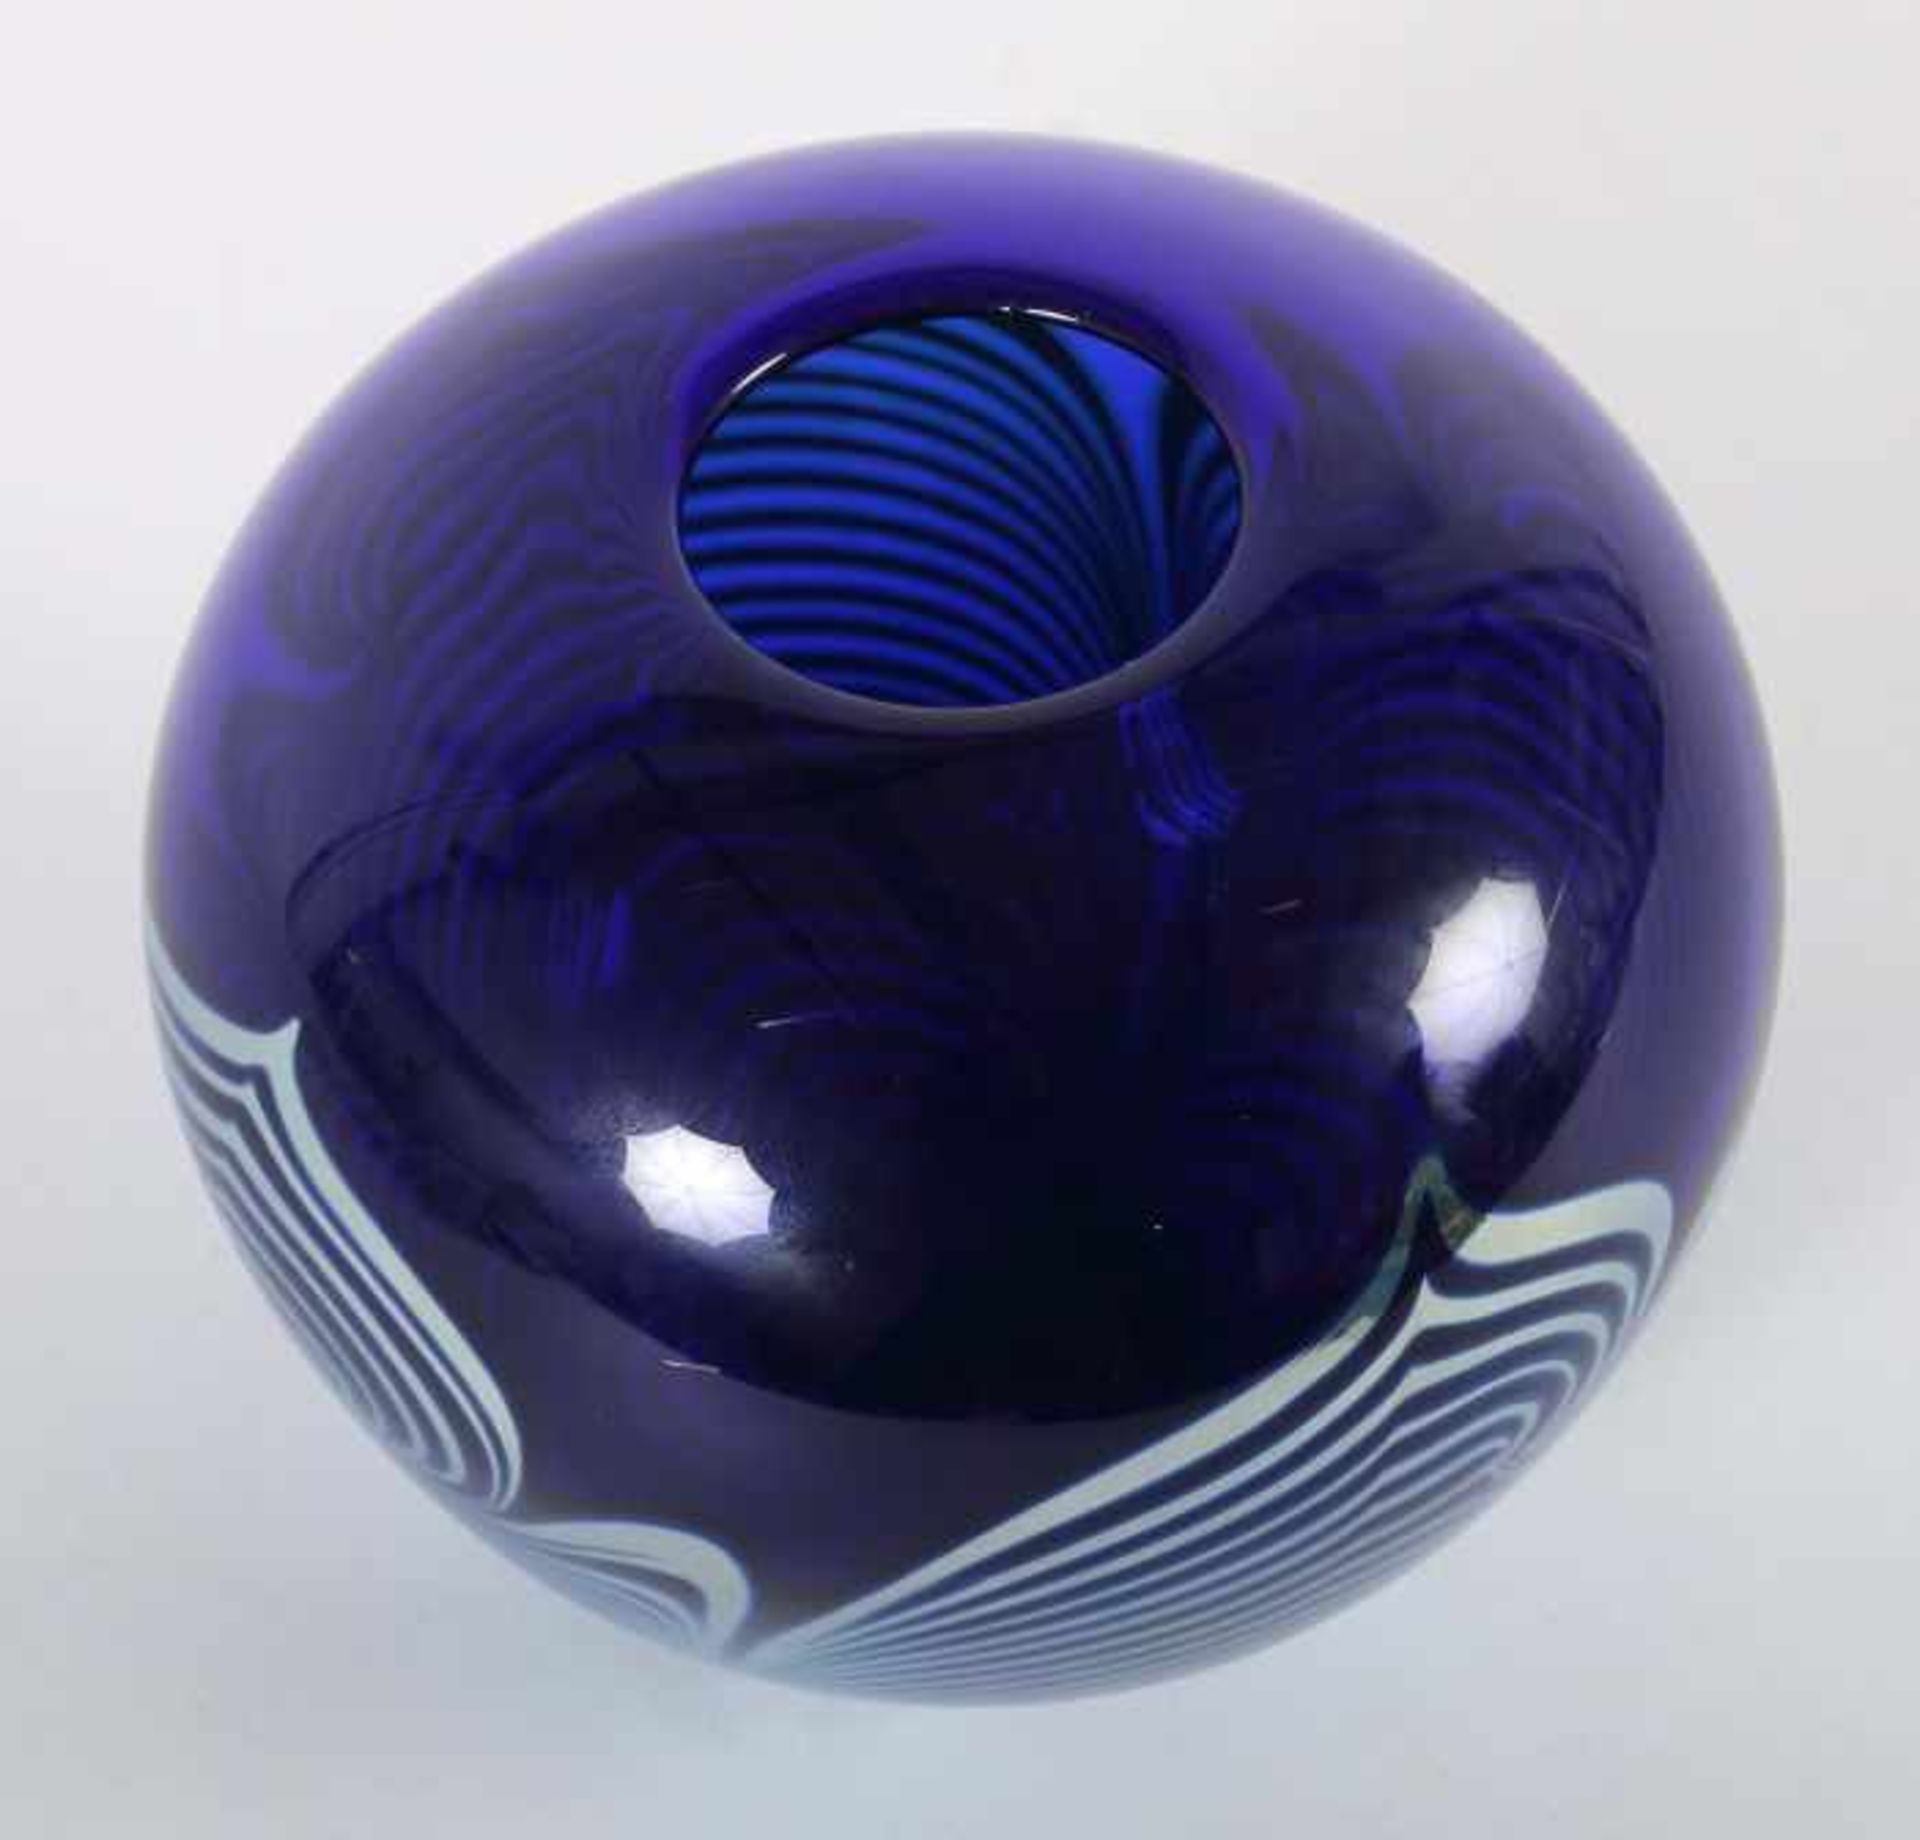 Vase2006, blaues Glas, modellgeblasen, kugelförmig, 4-fach aufgelegtes, eingelegtes undgekämmtes - Bild 3 aus 4